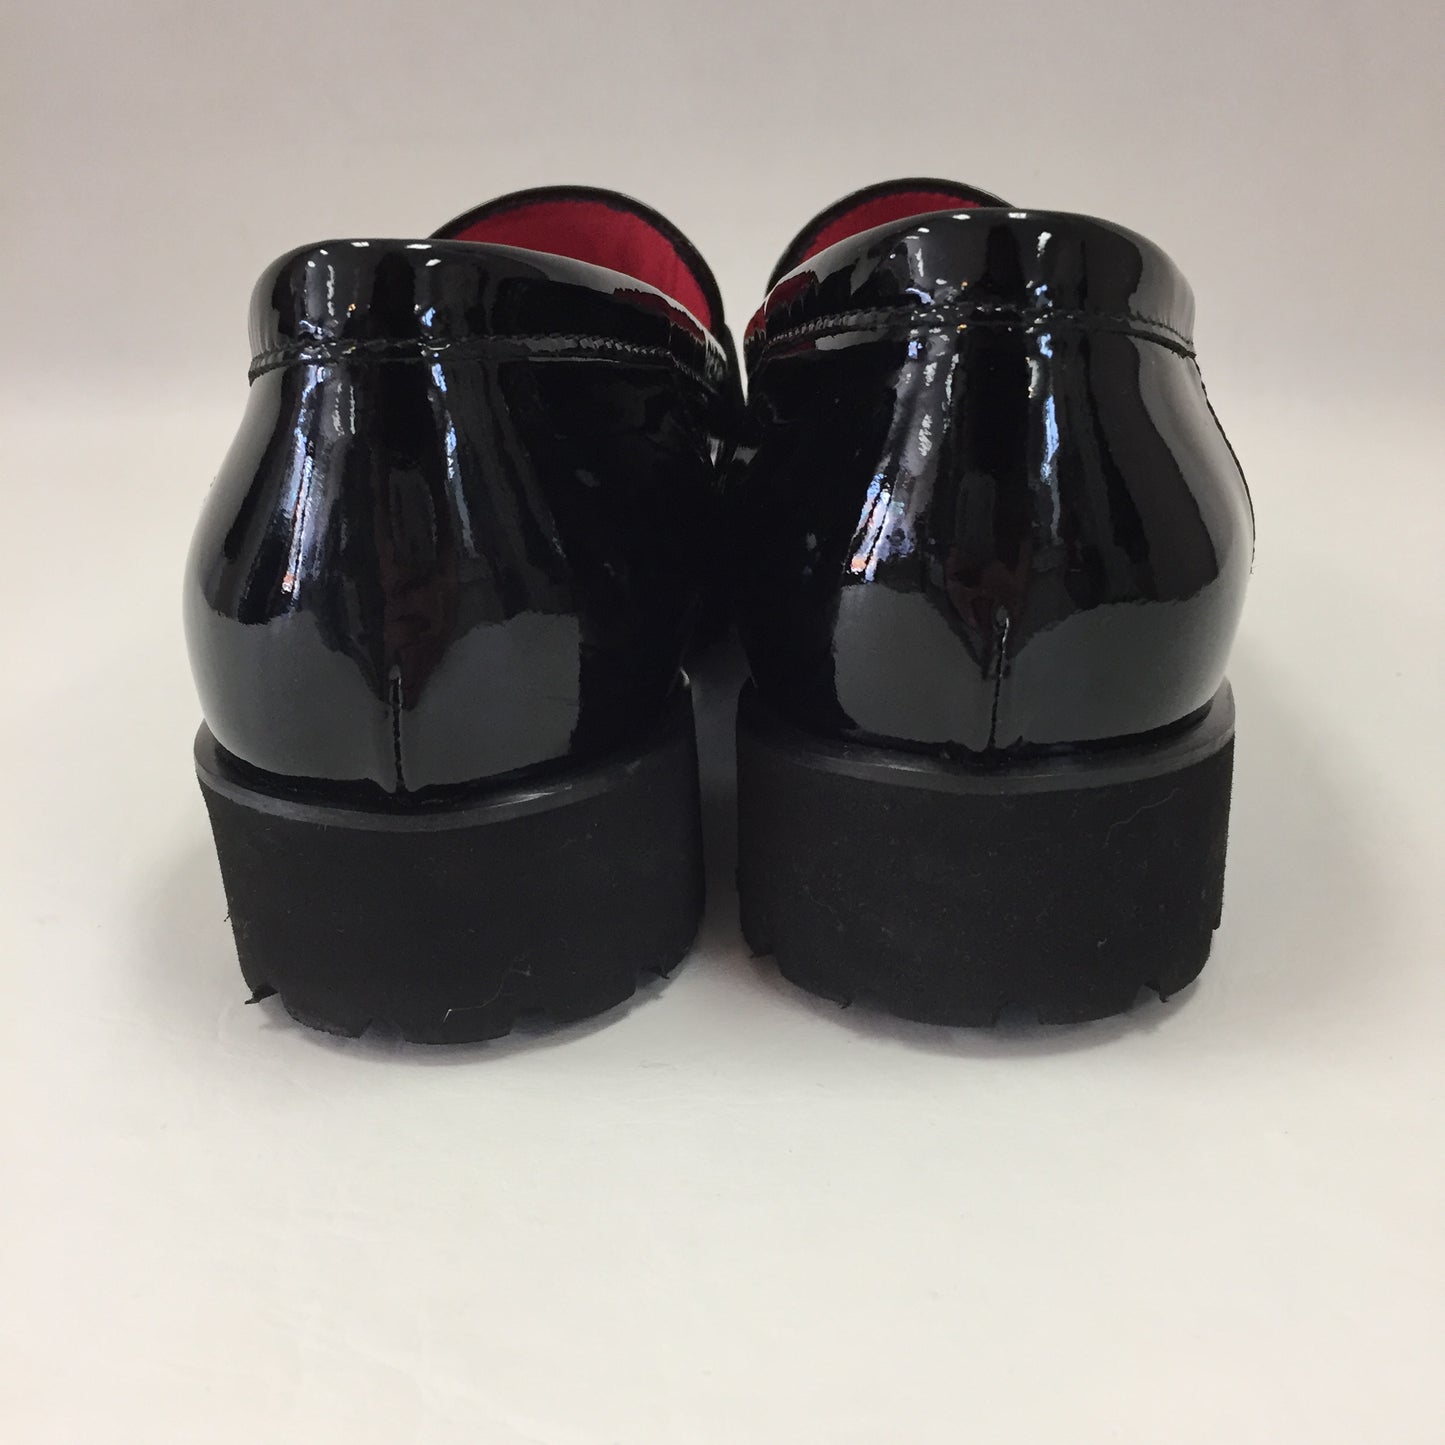 Authentic Pas De Rouge Black Patent "Marta" Loafers